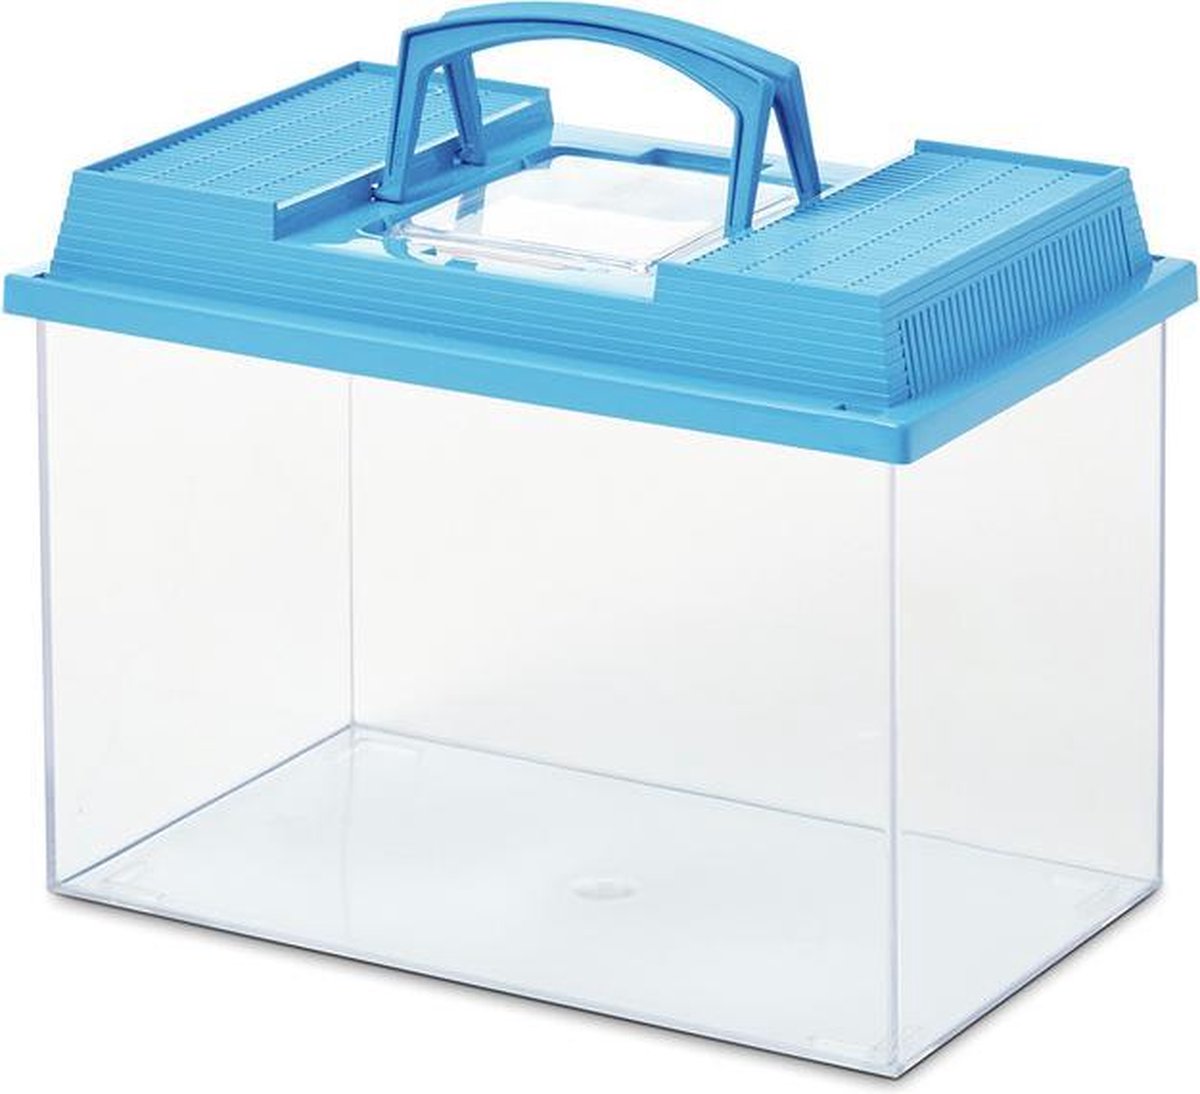 Savic Fauna Box Plastic Assorti - Aquaria - 27x17x18 cm Ca. 6 L